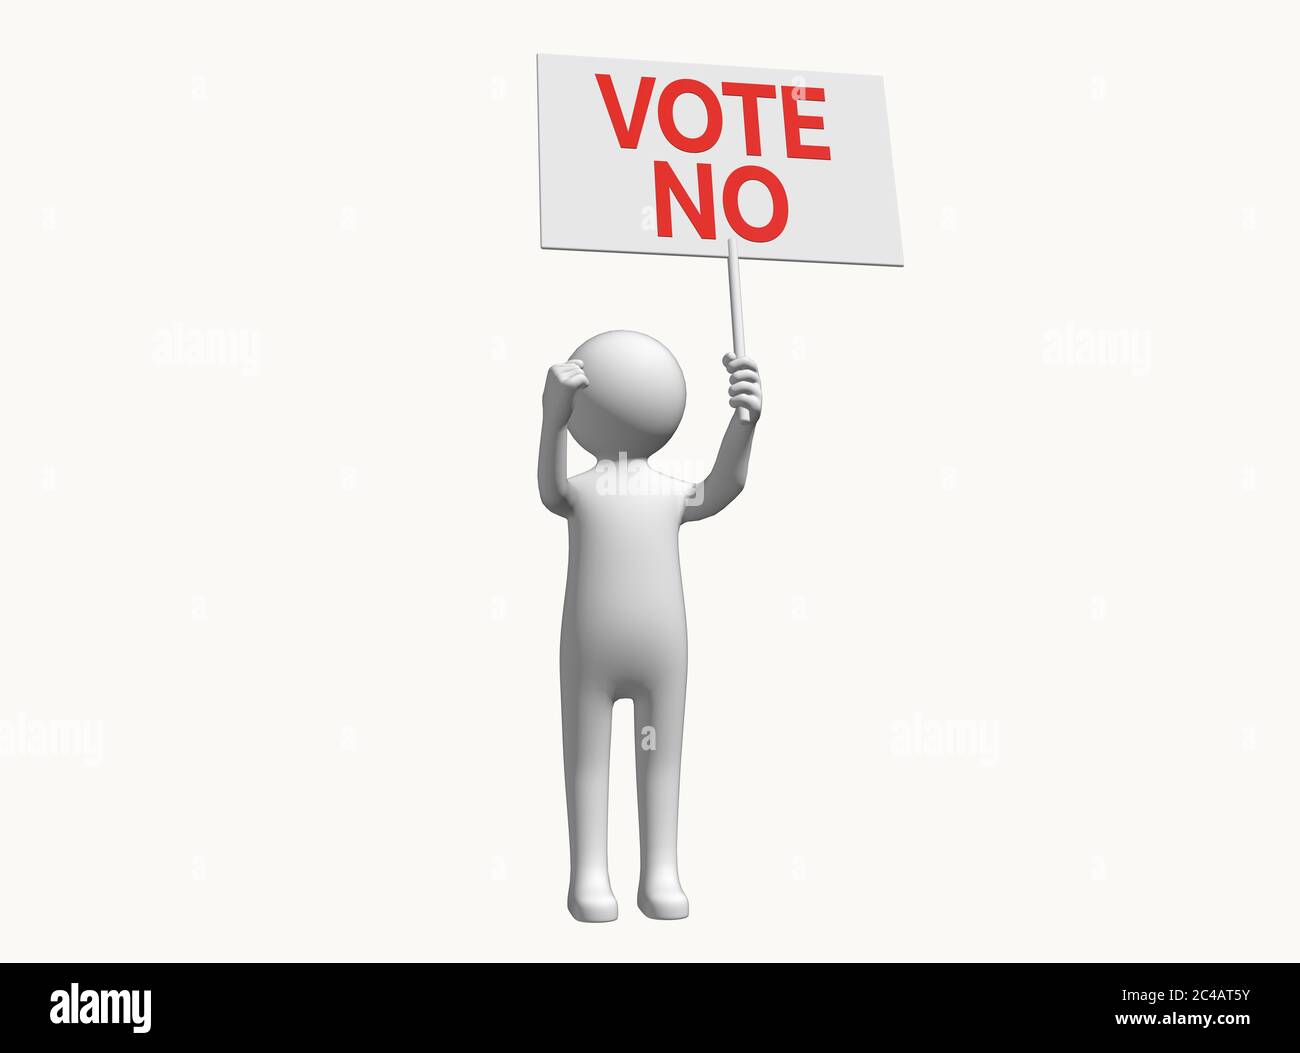 Anonymer 3D-Charakter-Stick-Mann mit Schild Plakat zur Unterstützung der Abstimmung Nein Stimme kein Zeichen Stimme kein Plakat Wahl Wahl Protest Referendum Konzept Stockfoto